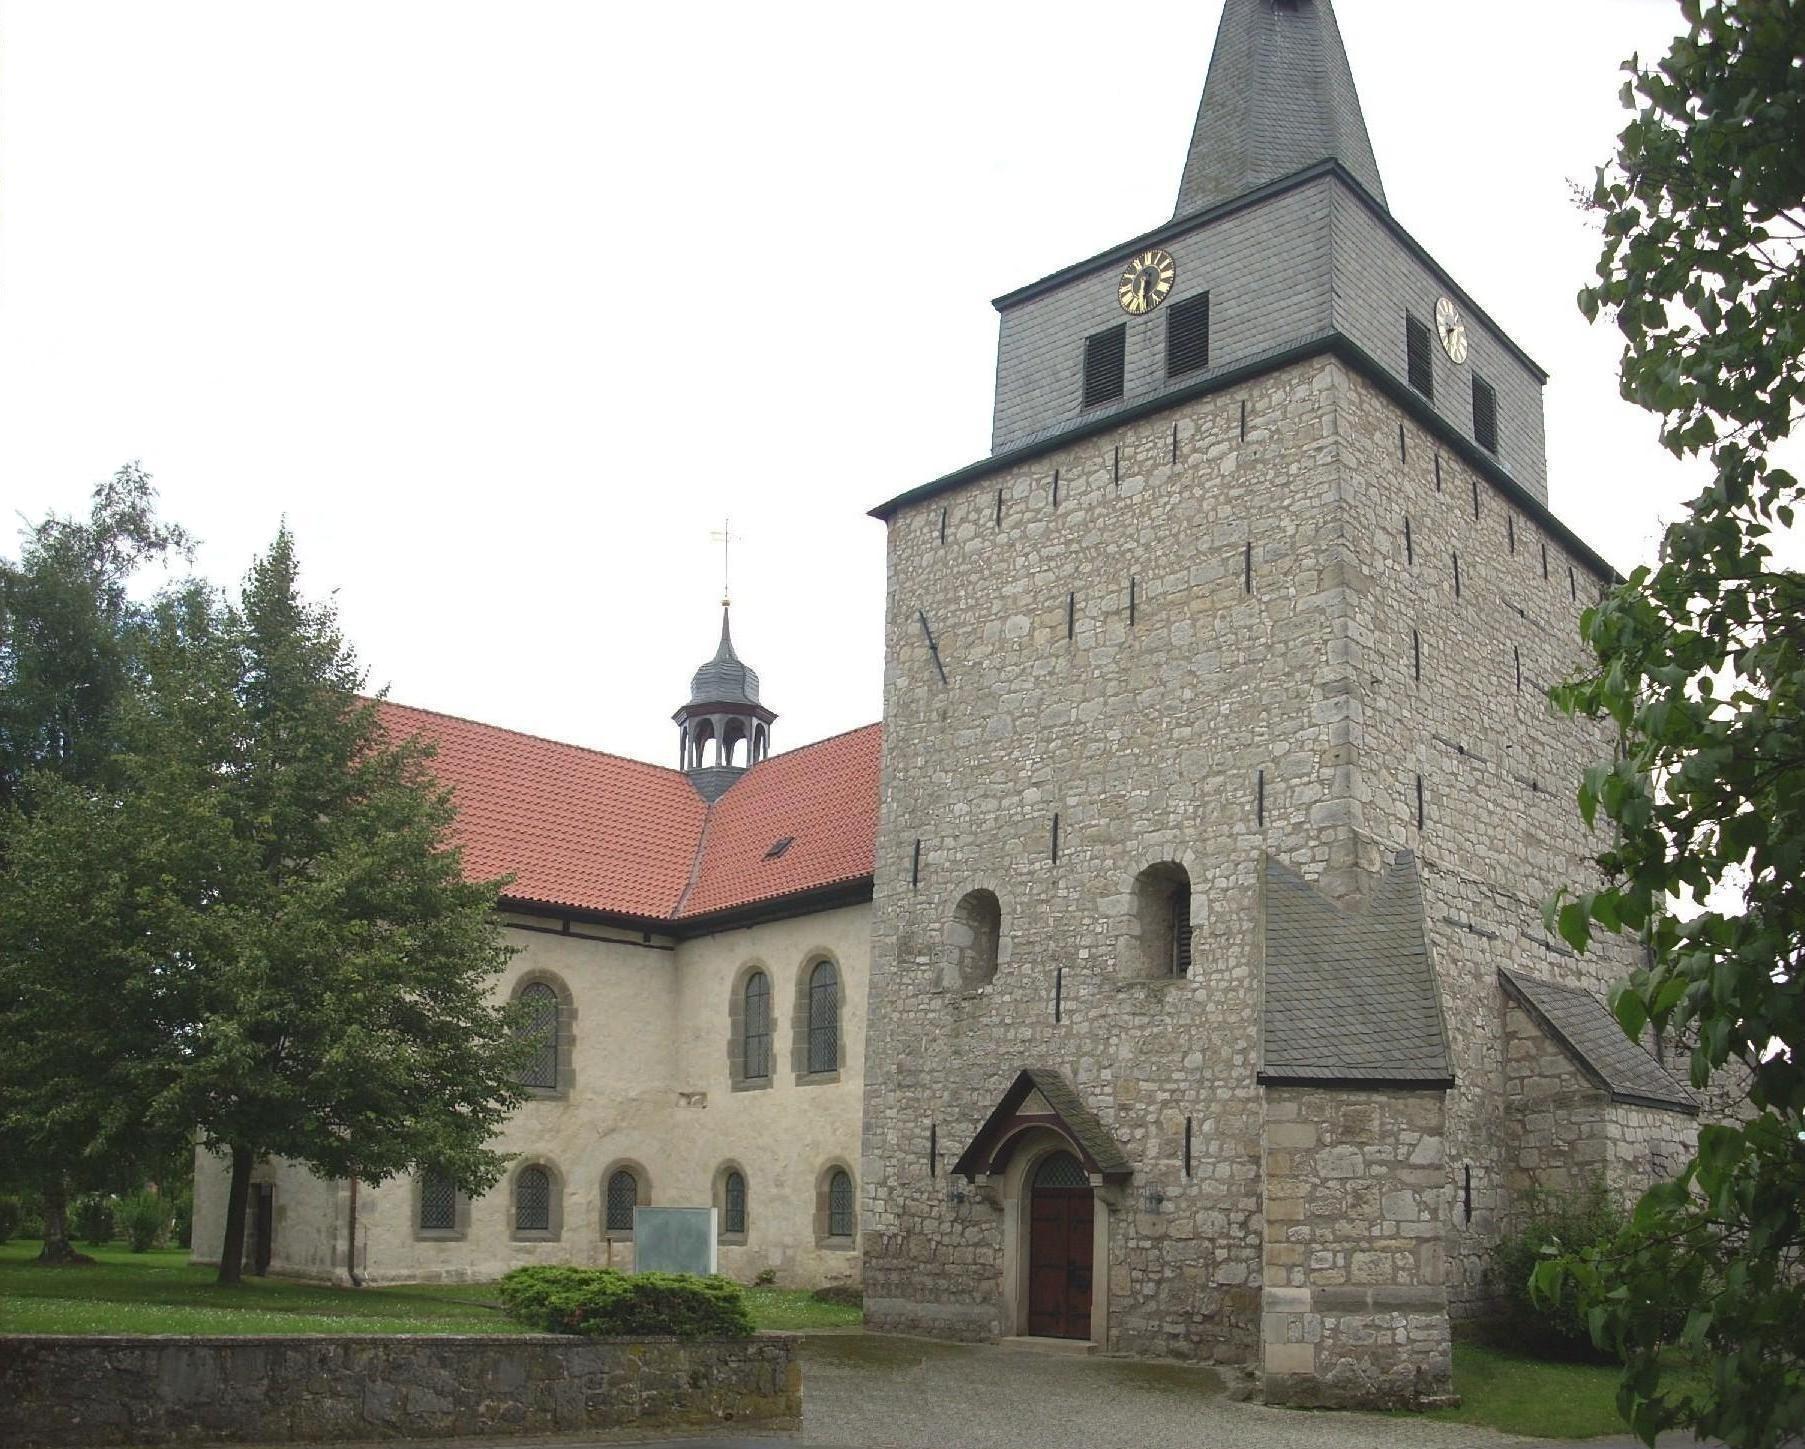 Ev Landeskirche Hannover